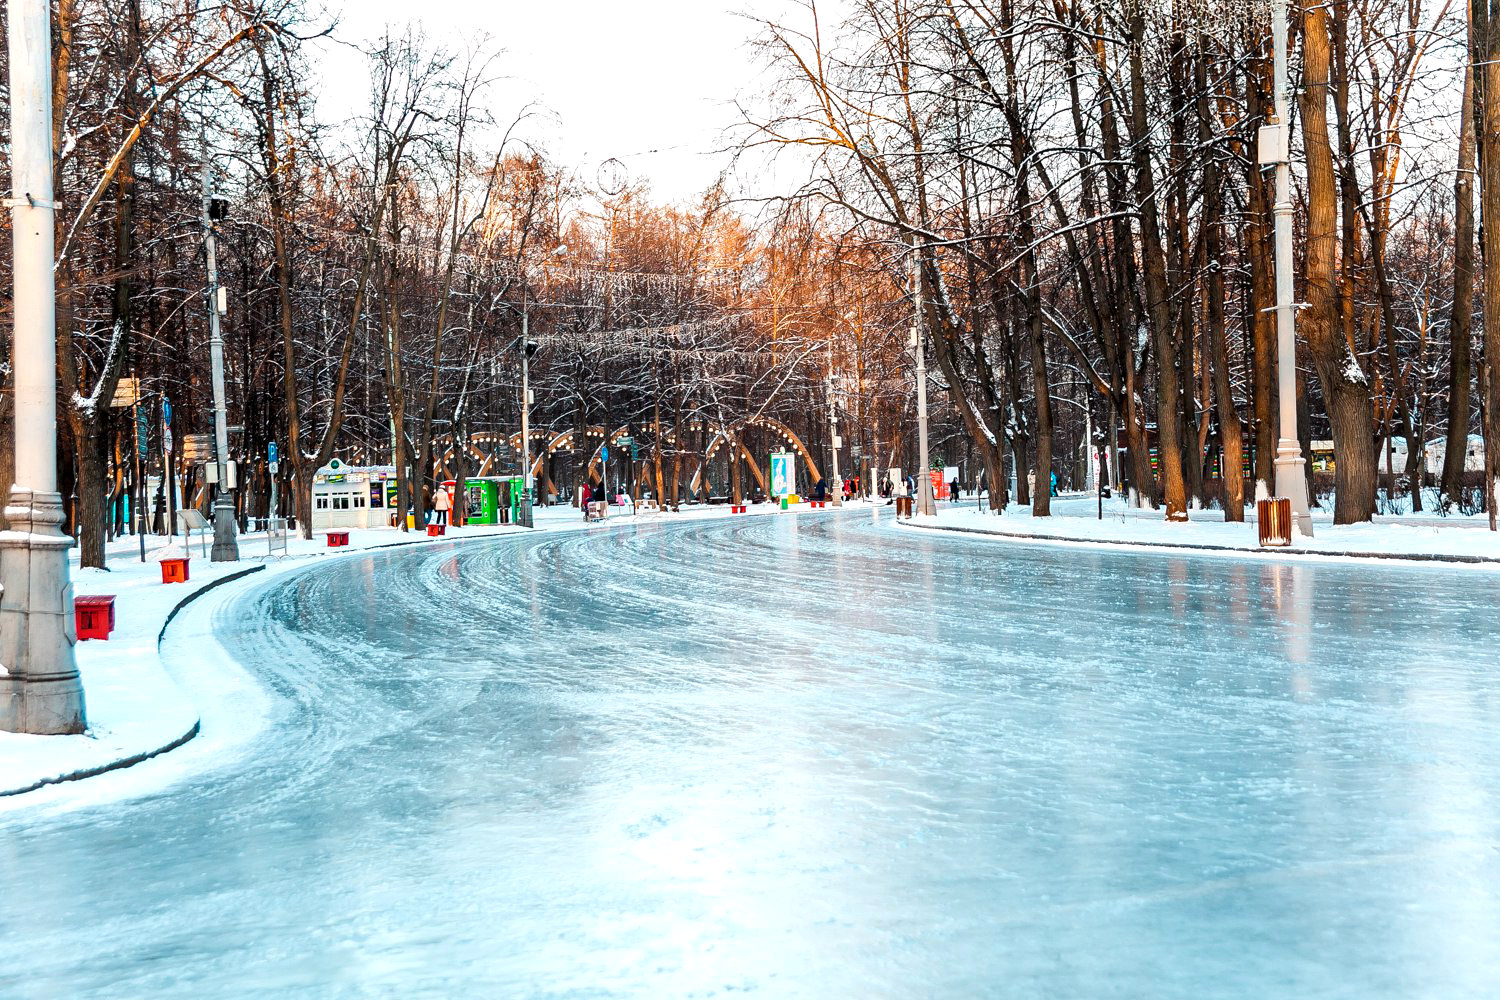 Зимой улицы парка Сокольники заливают для катания на коньках, так же есть лыжные дорожки